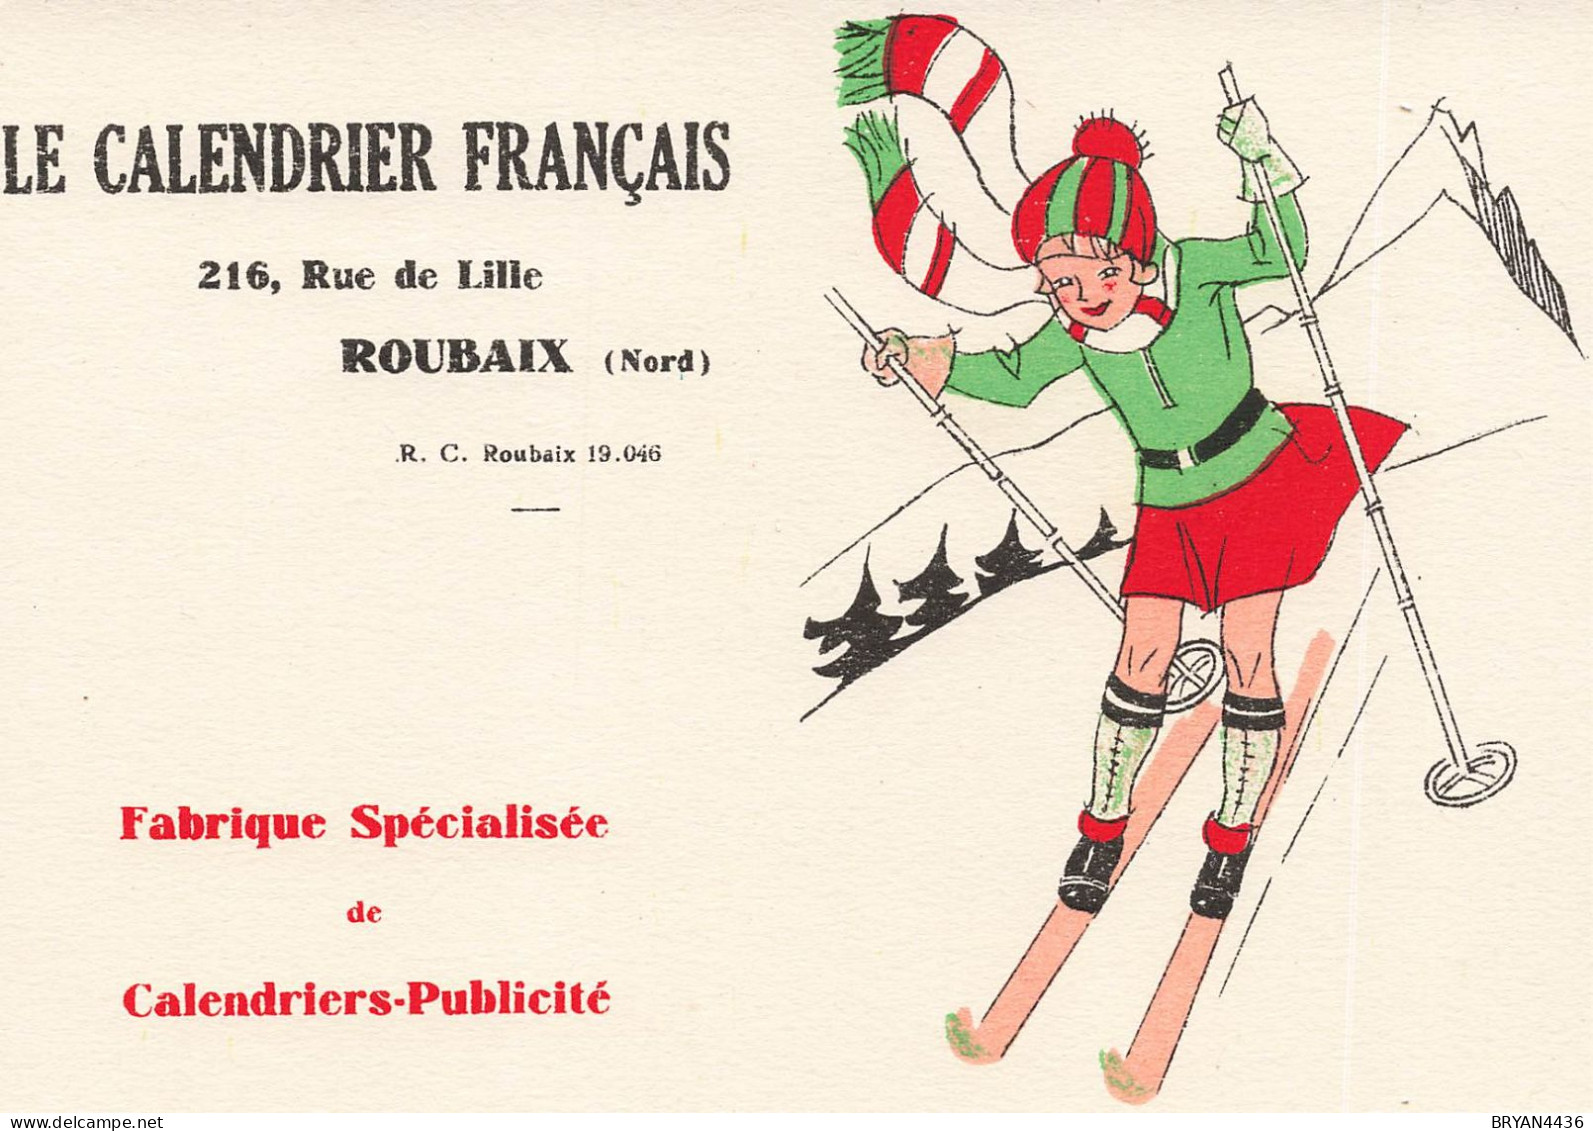 59 - ROUBAIX - ENTREPRISE - "LE CALENDRIER FRANCAIS" - 216, Ruede LILLE - BUVARD (14x16cm) - Textile & Clothing